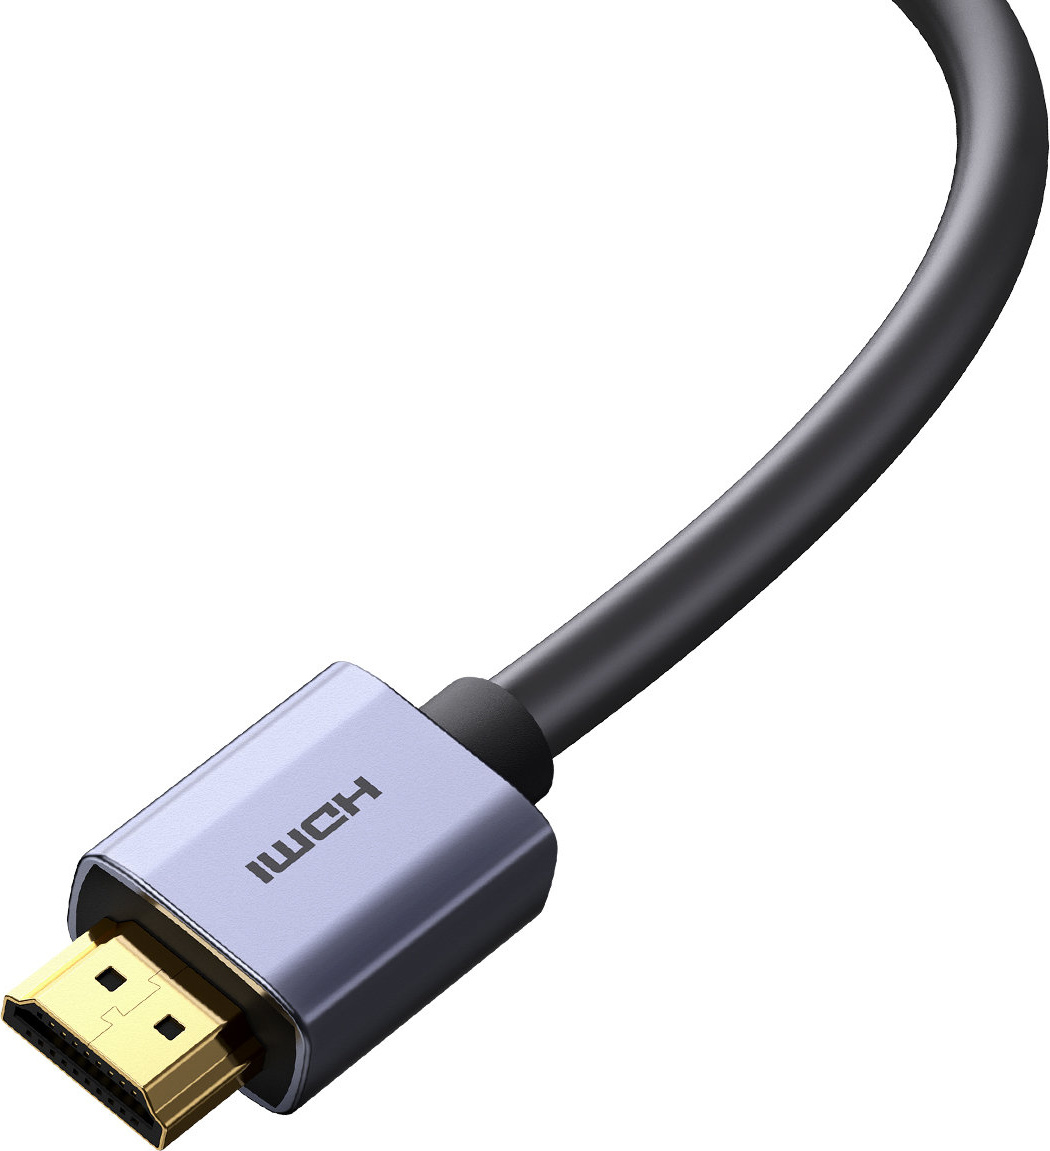 Baseus High Definition Series HDMI 2.0 4K 60Hz 1.5m cable black